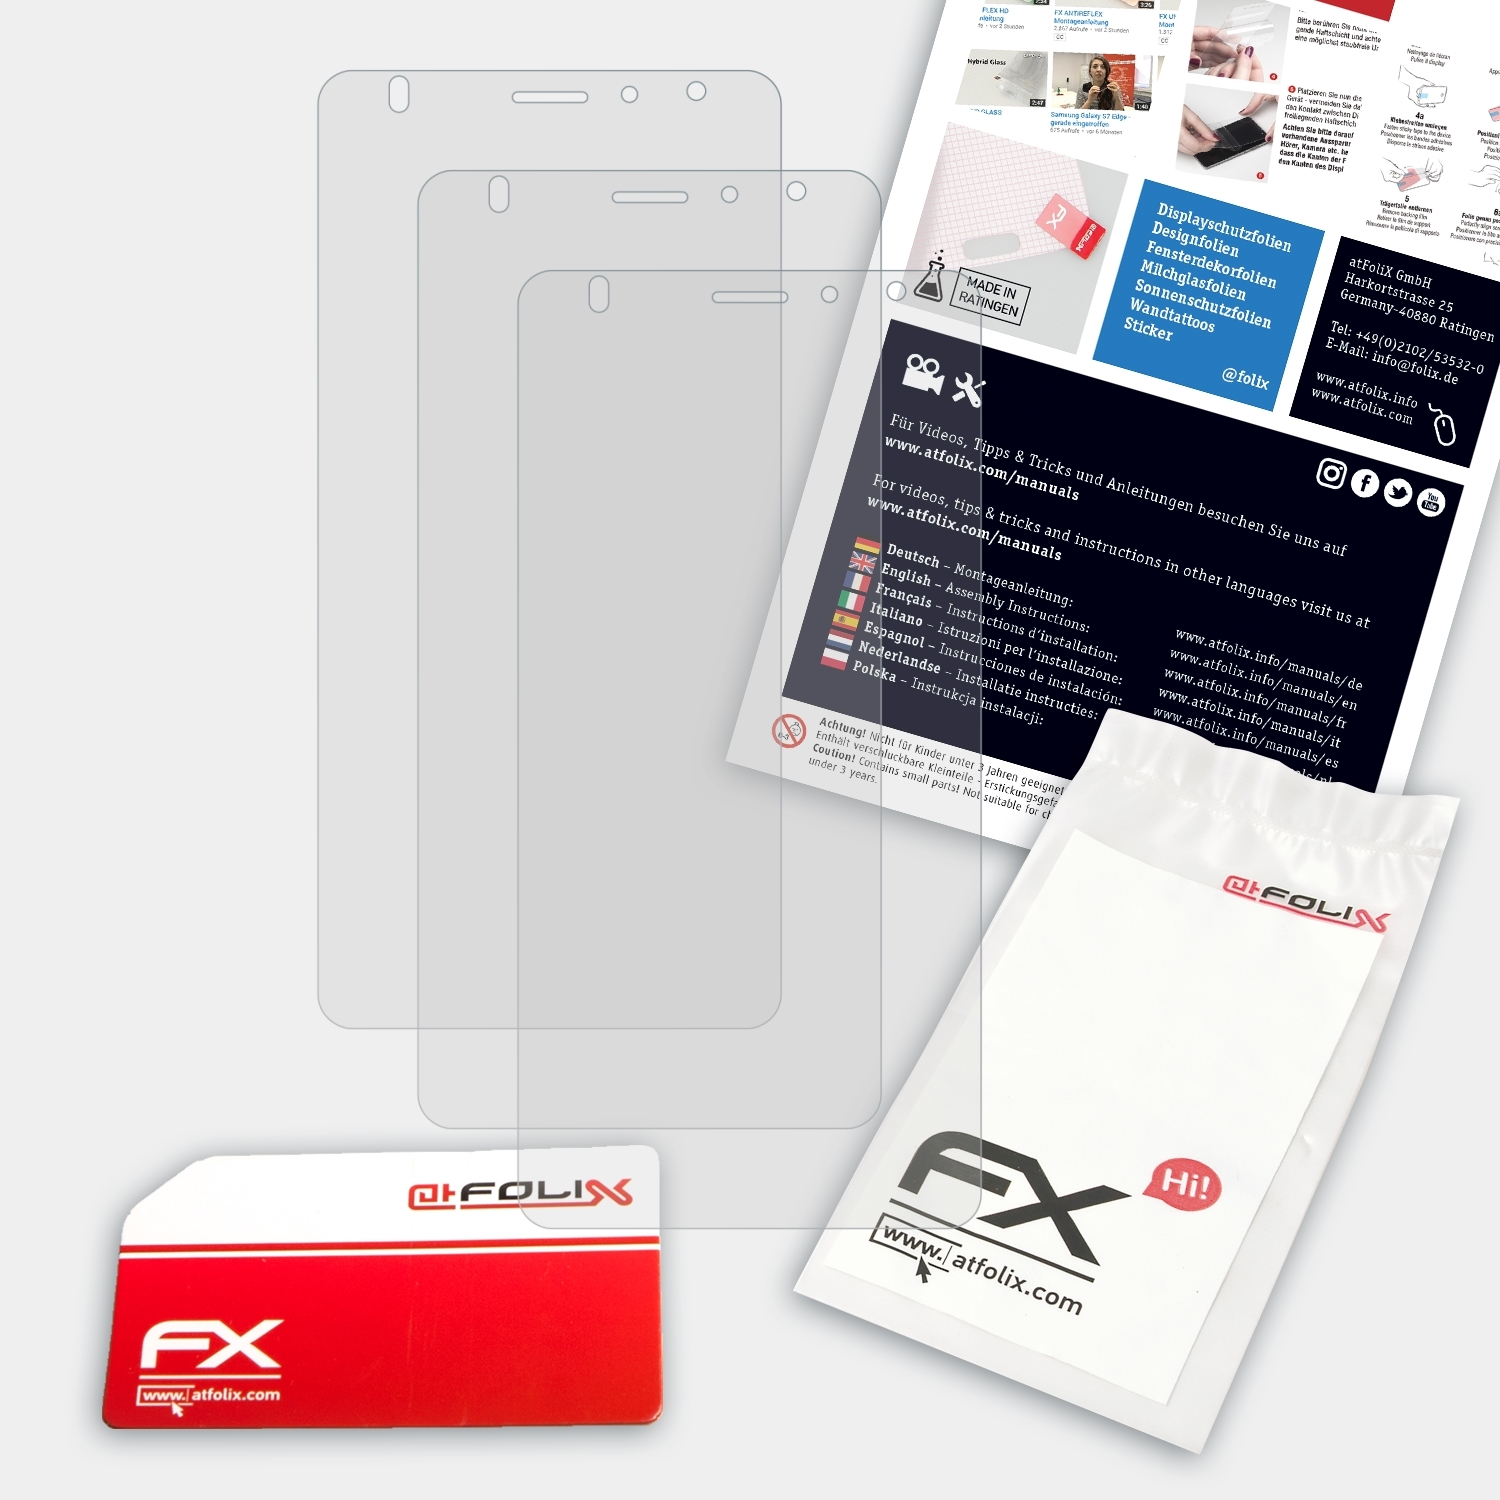 ATFOLIX 3x FX-Antireflex Displayschutz(für Timmy M50)